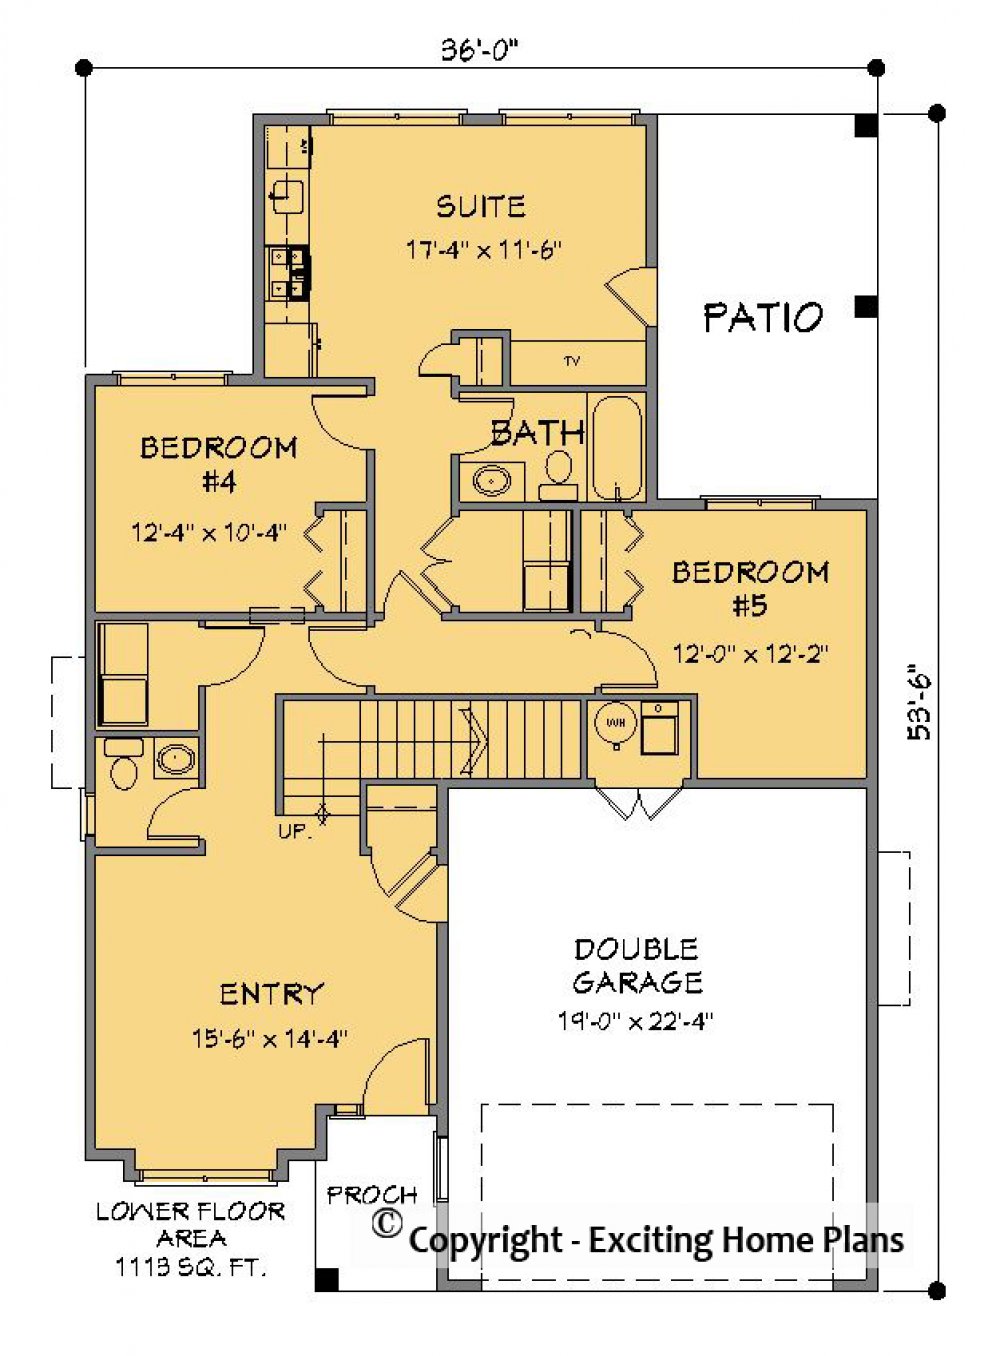 House Plan E128-10  Lower Floor Plan